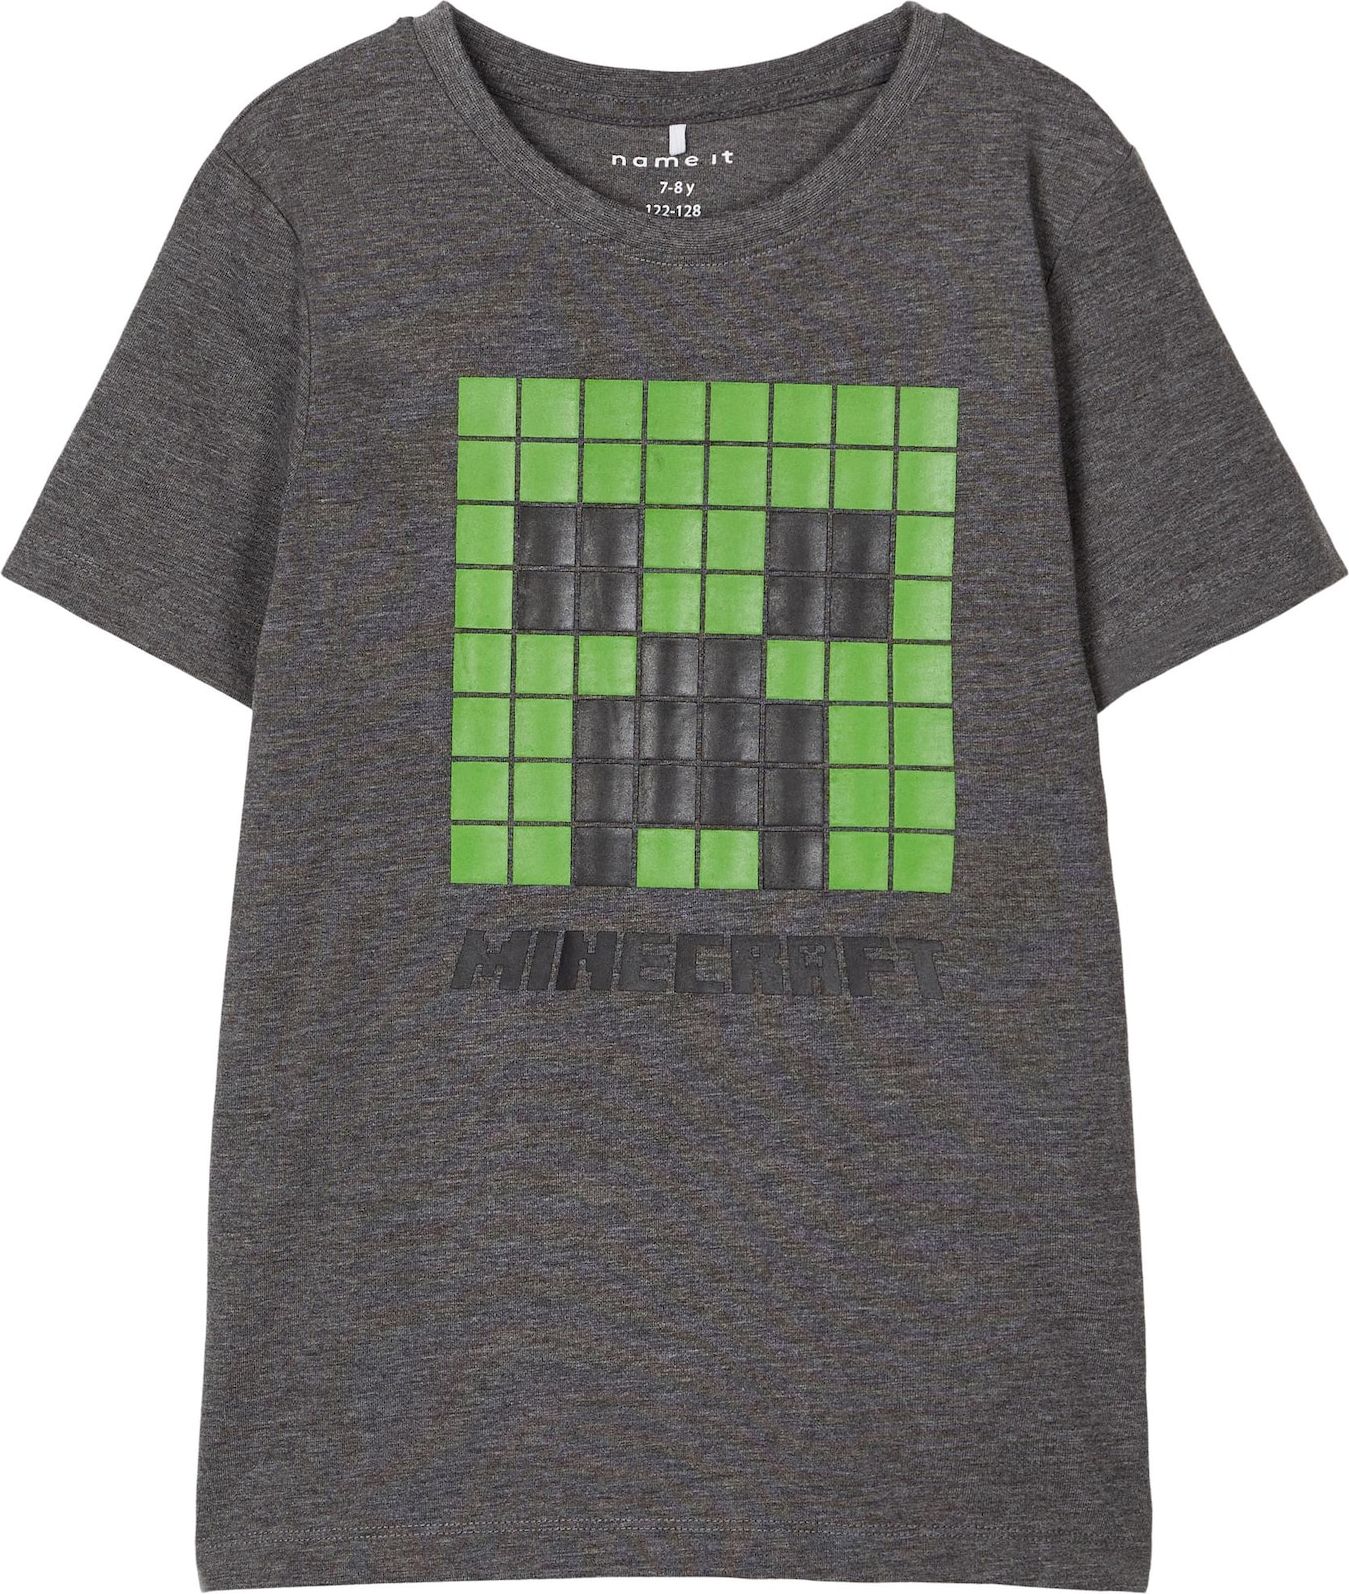 NAME IT Tričko 'Minecraft Andre' tmavě šedá / světle zelená